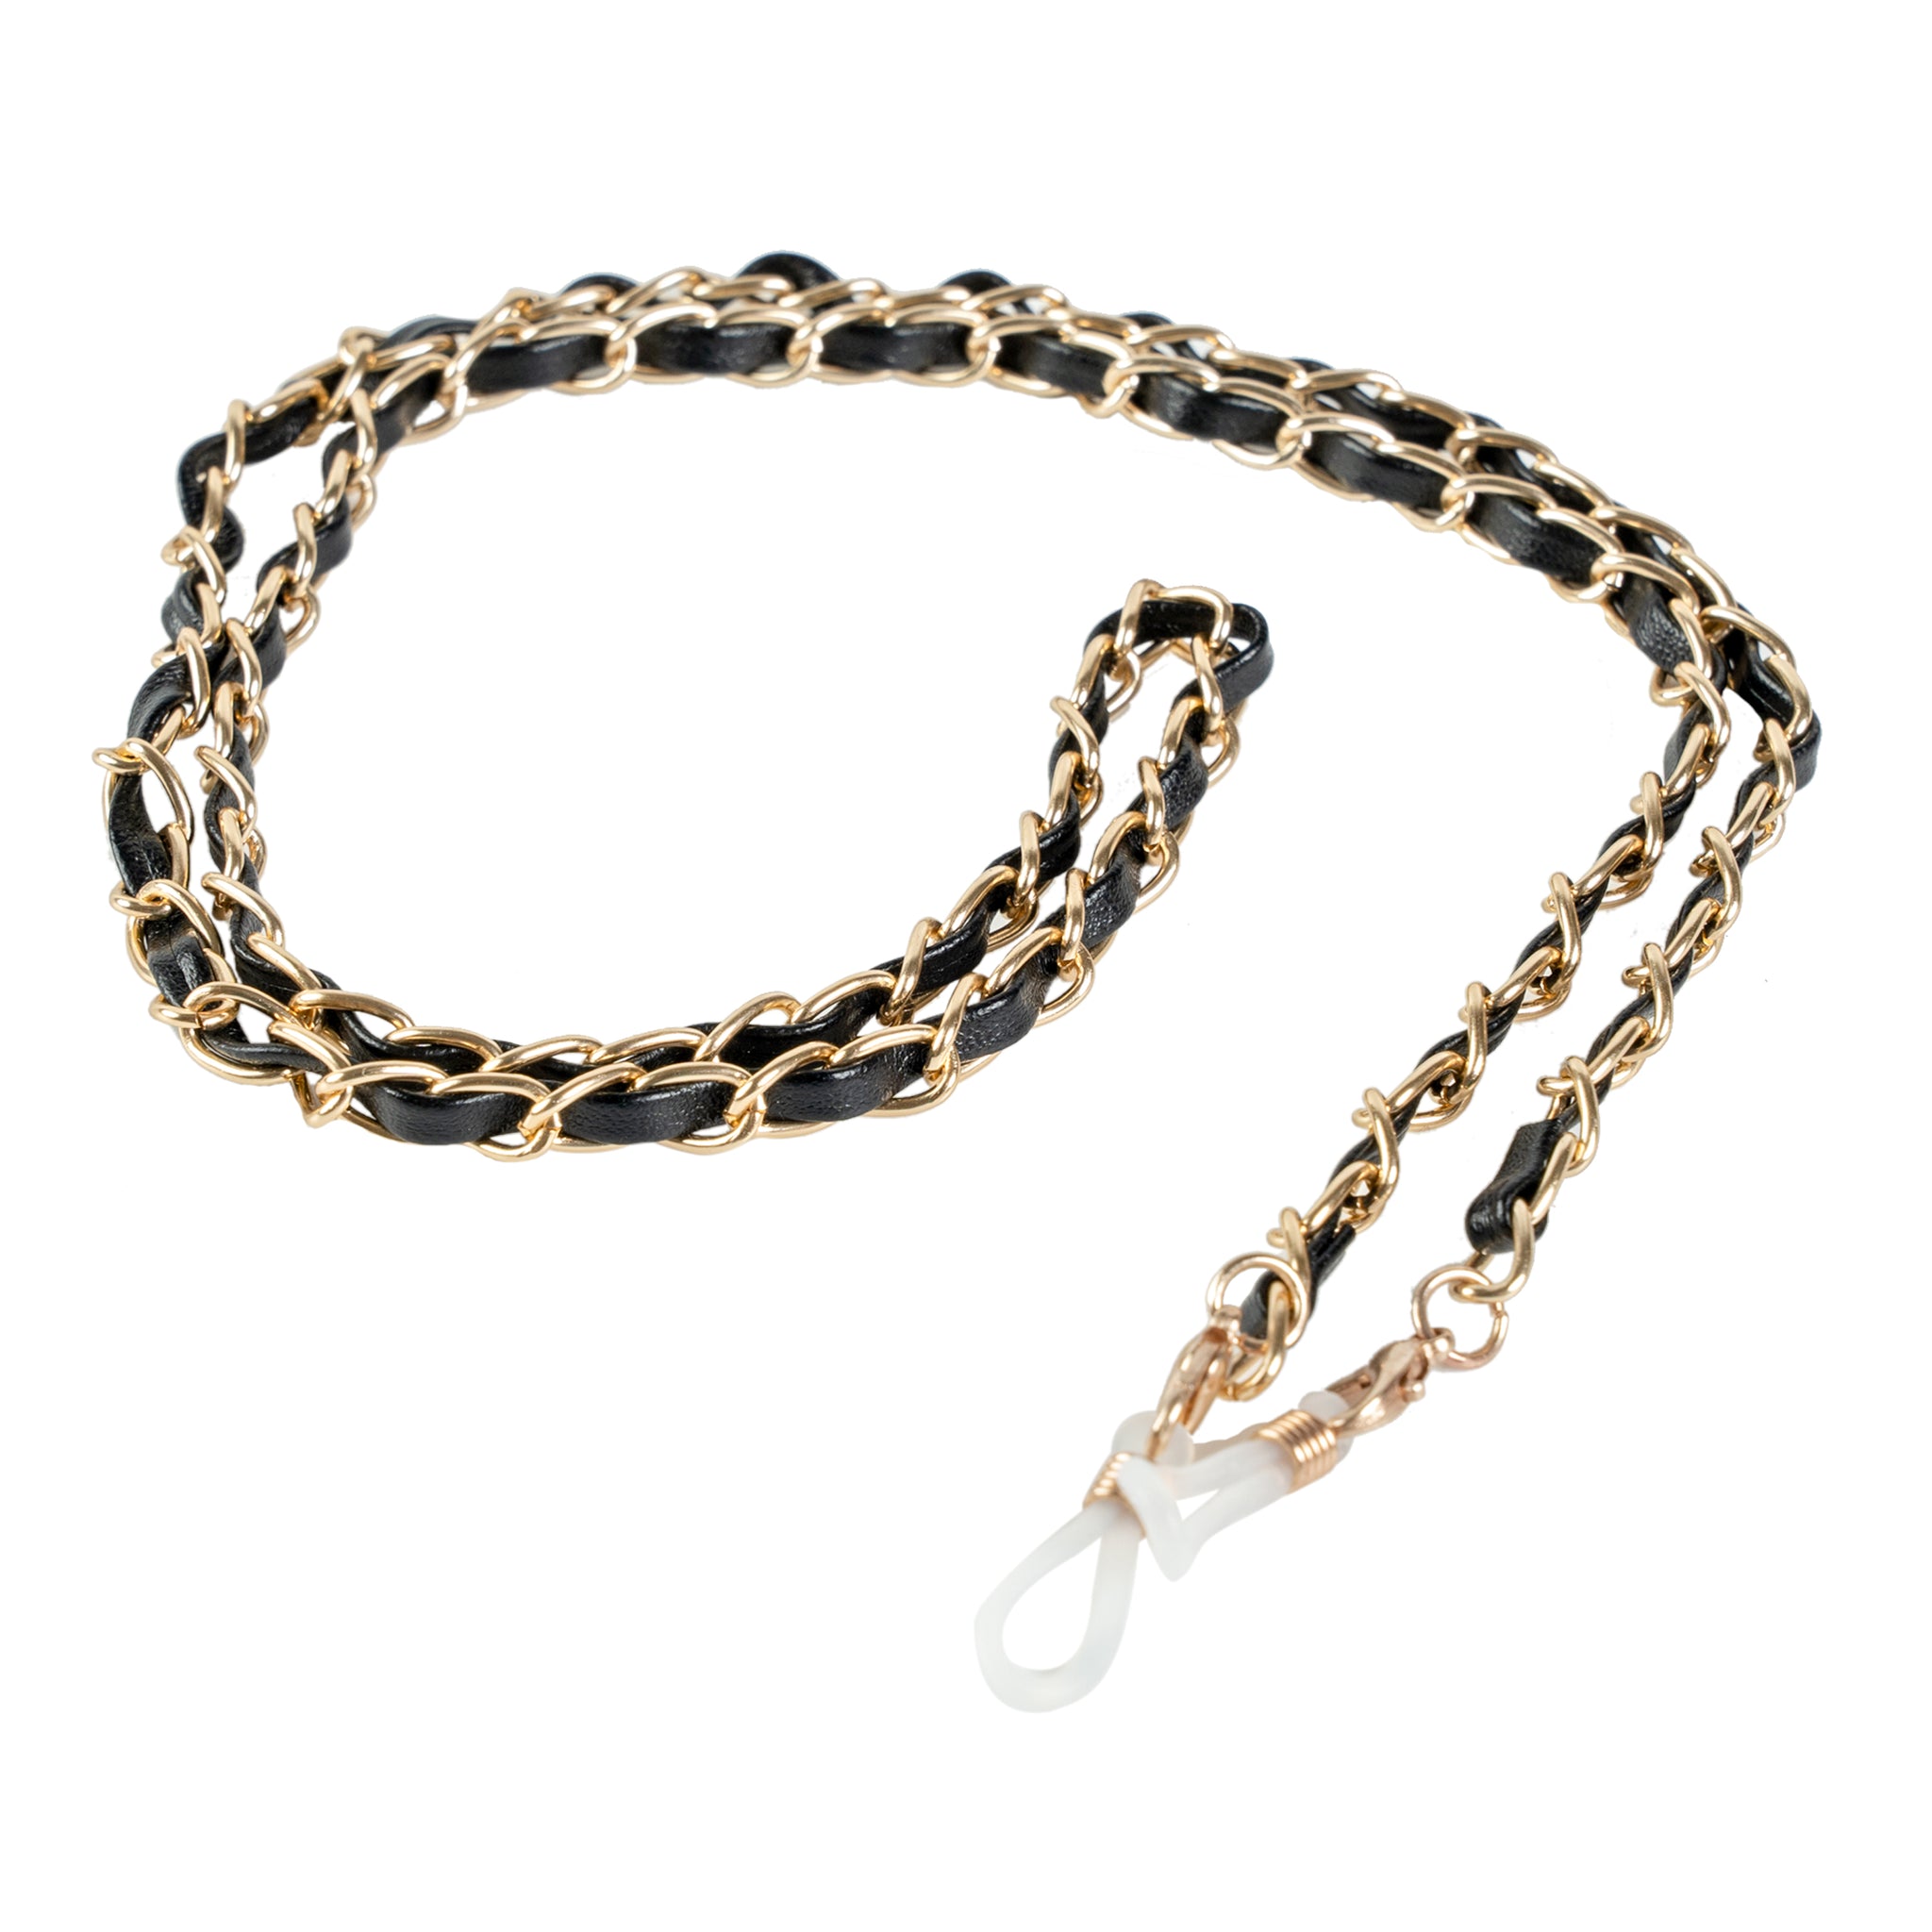 Chokore Braided Glass Chain (Black & Gold)